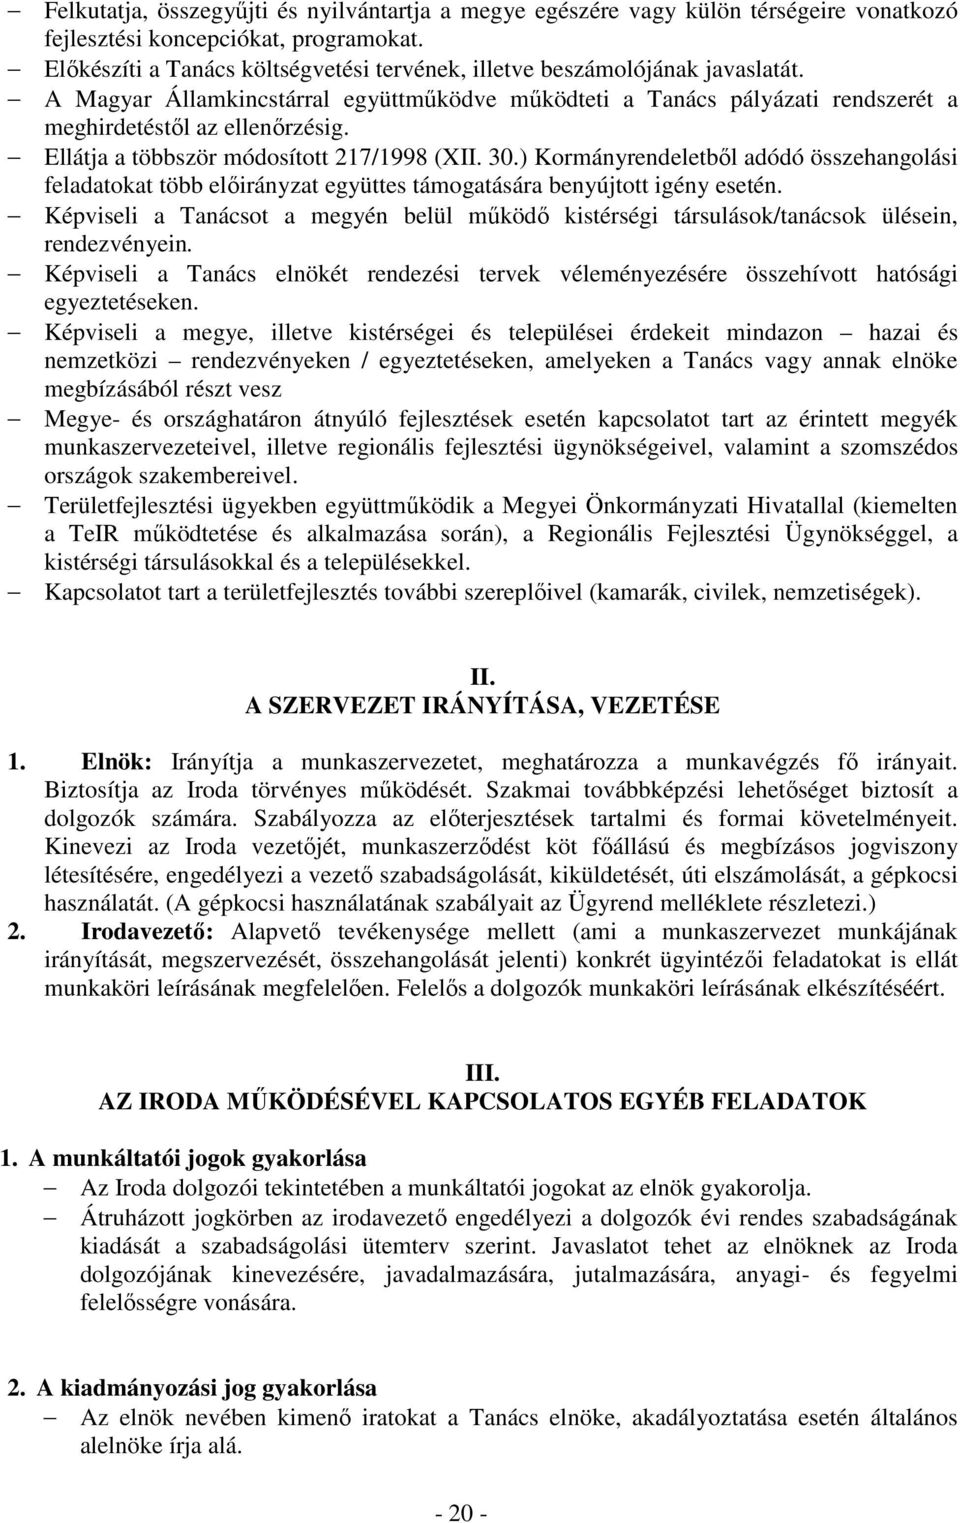 Ellátja a többször módosított 217/1998 (XII. 30.) Kormányrendeletbıl adódó összehangolási feladatokat több elıirányzat együttes támogatására benyújtott igény esetén.